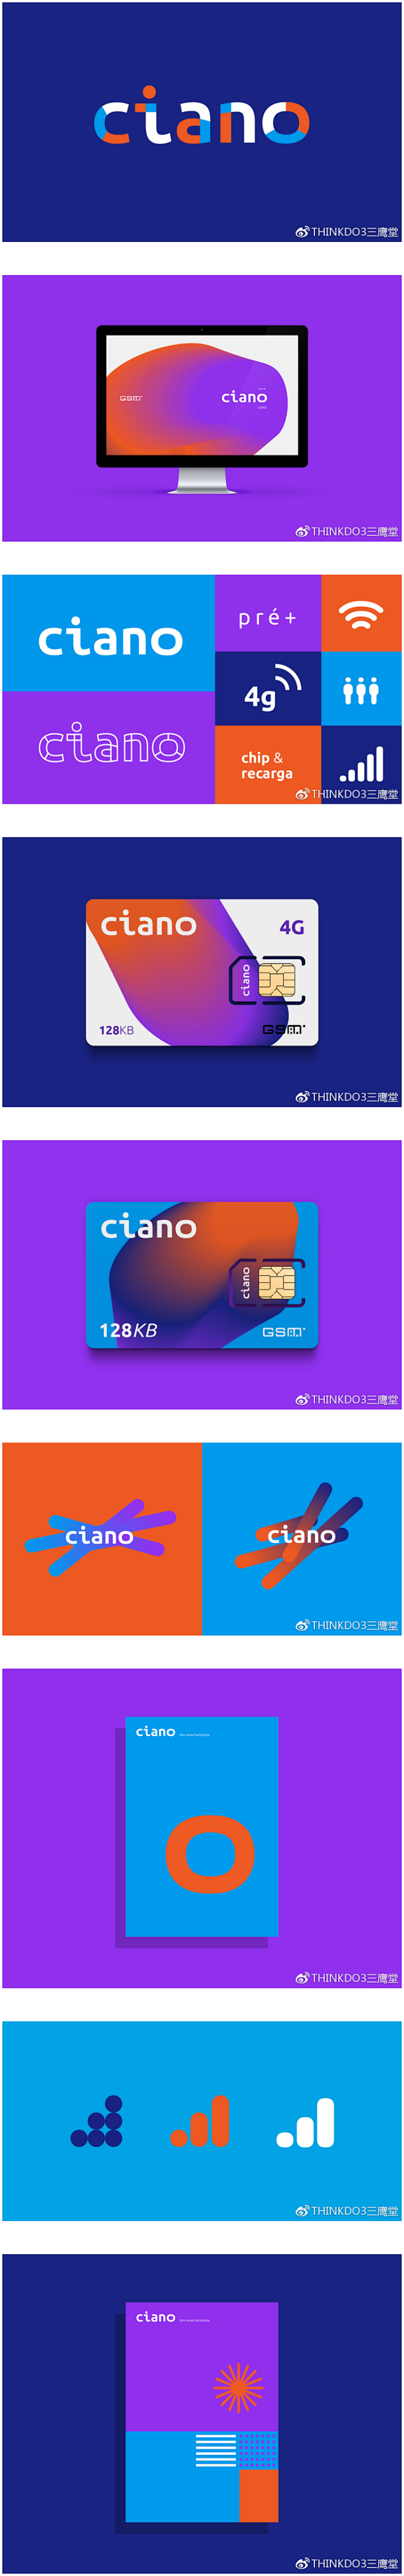 Ciano移动电话公司品牌形象设计